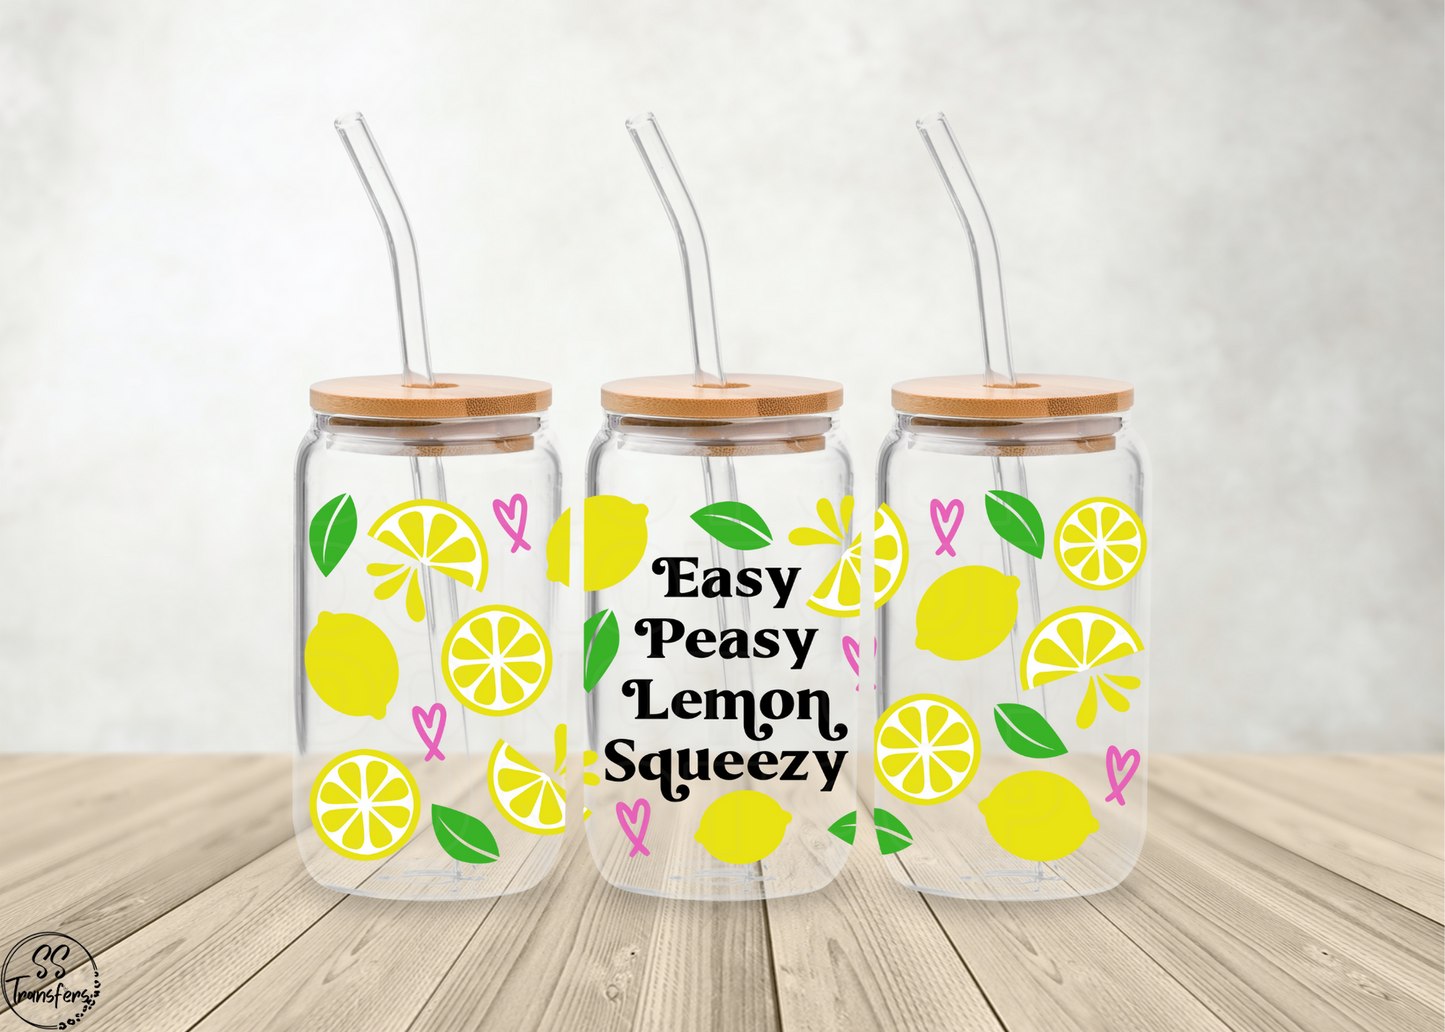 Easy Peasy Lemon Squeezy Libbey UV Wrap